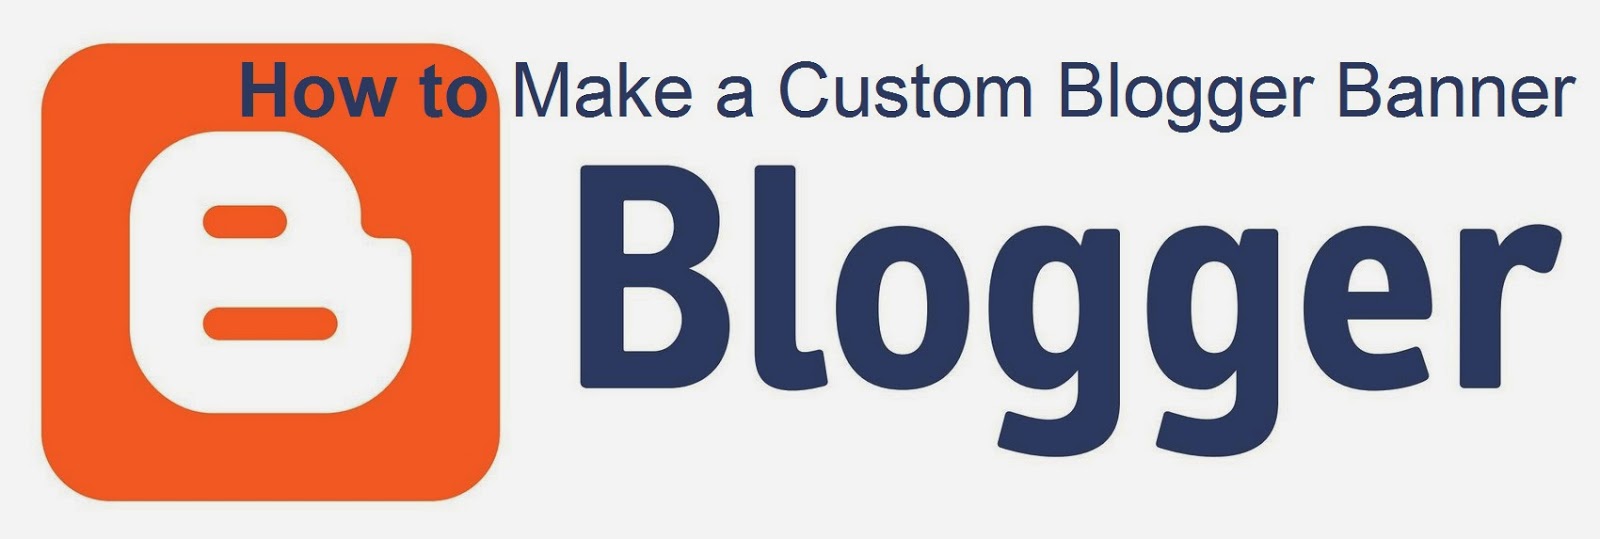 How to Make a Custom Blogger Banner : eAskme